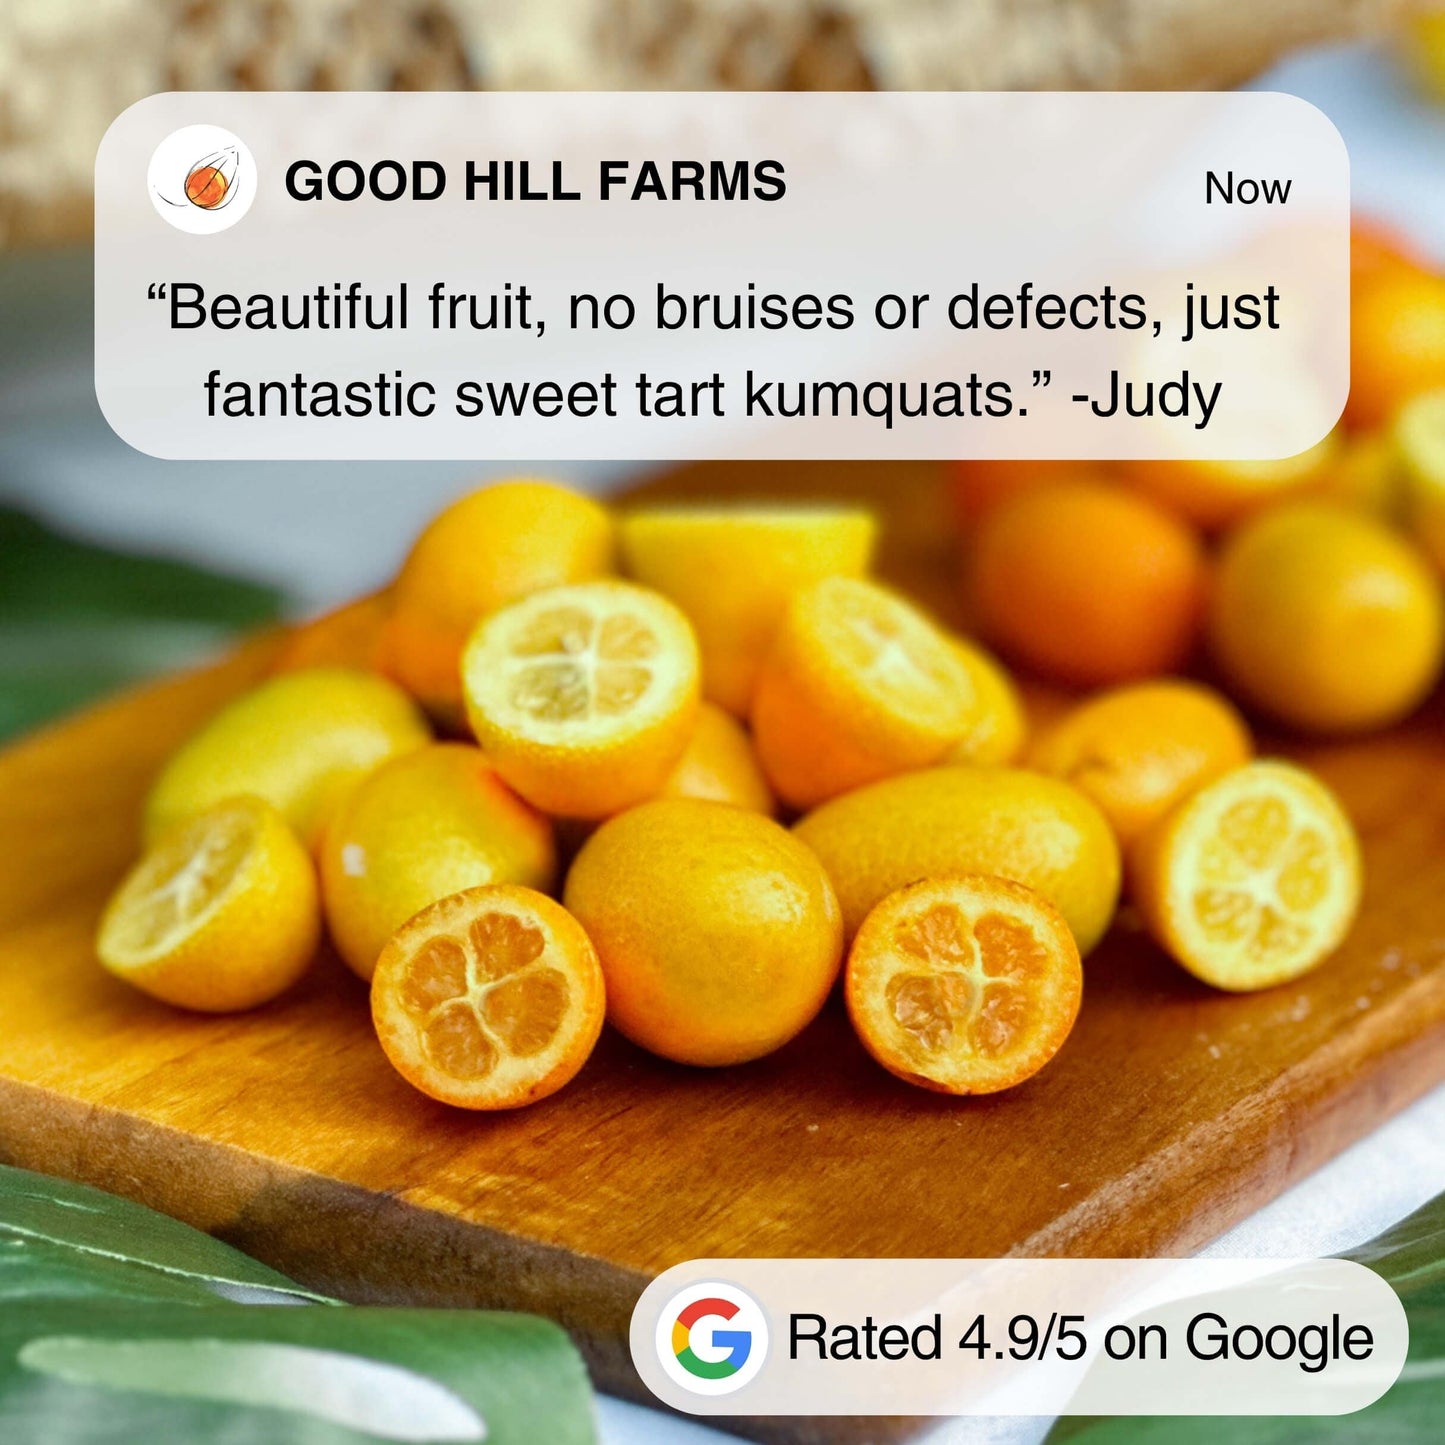 Kumquat Fruit